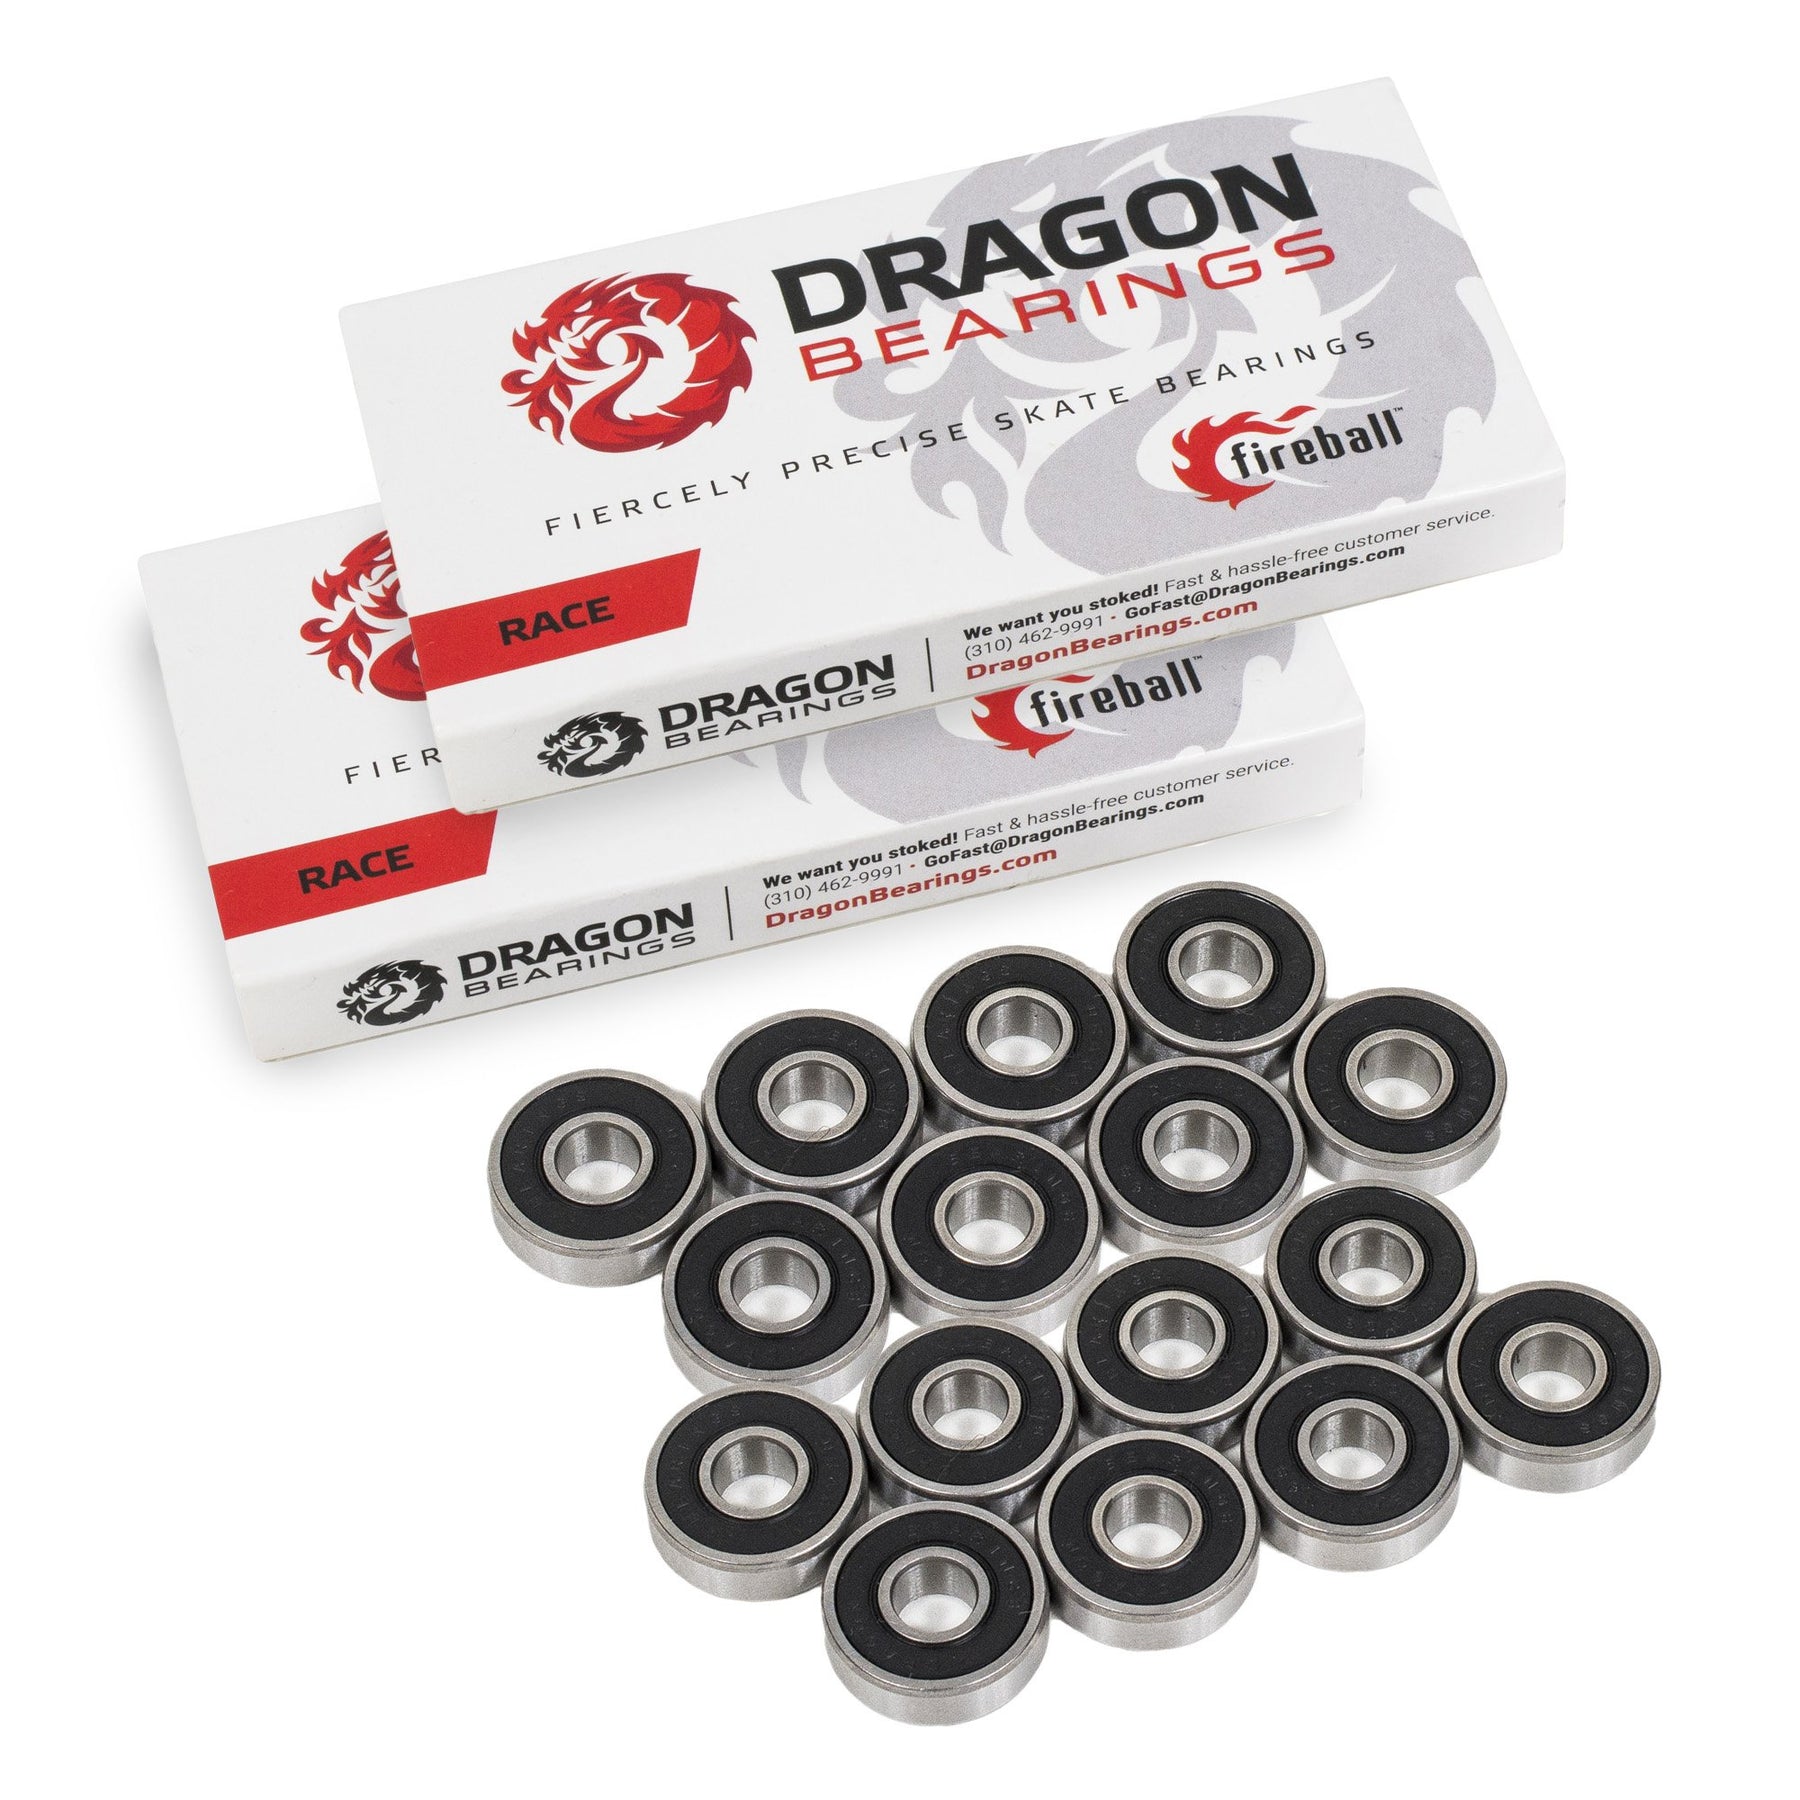 Fireball Dragon Bearings for Roller & Inline Skates, 16 Pack